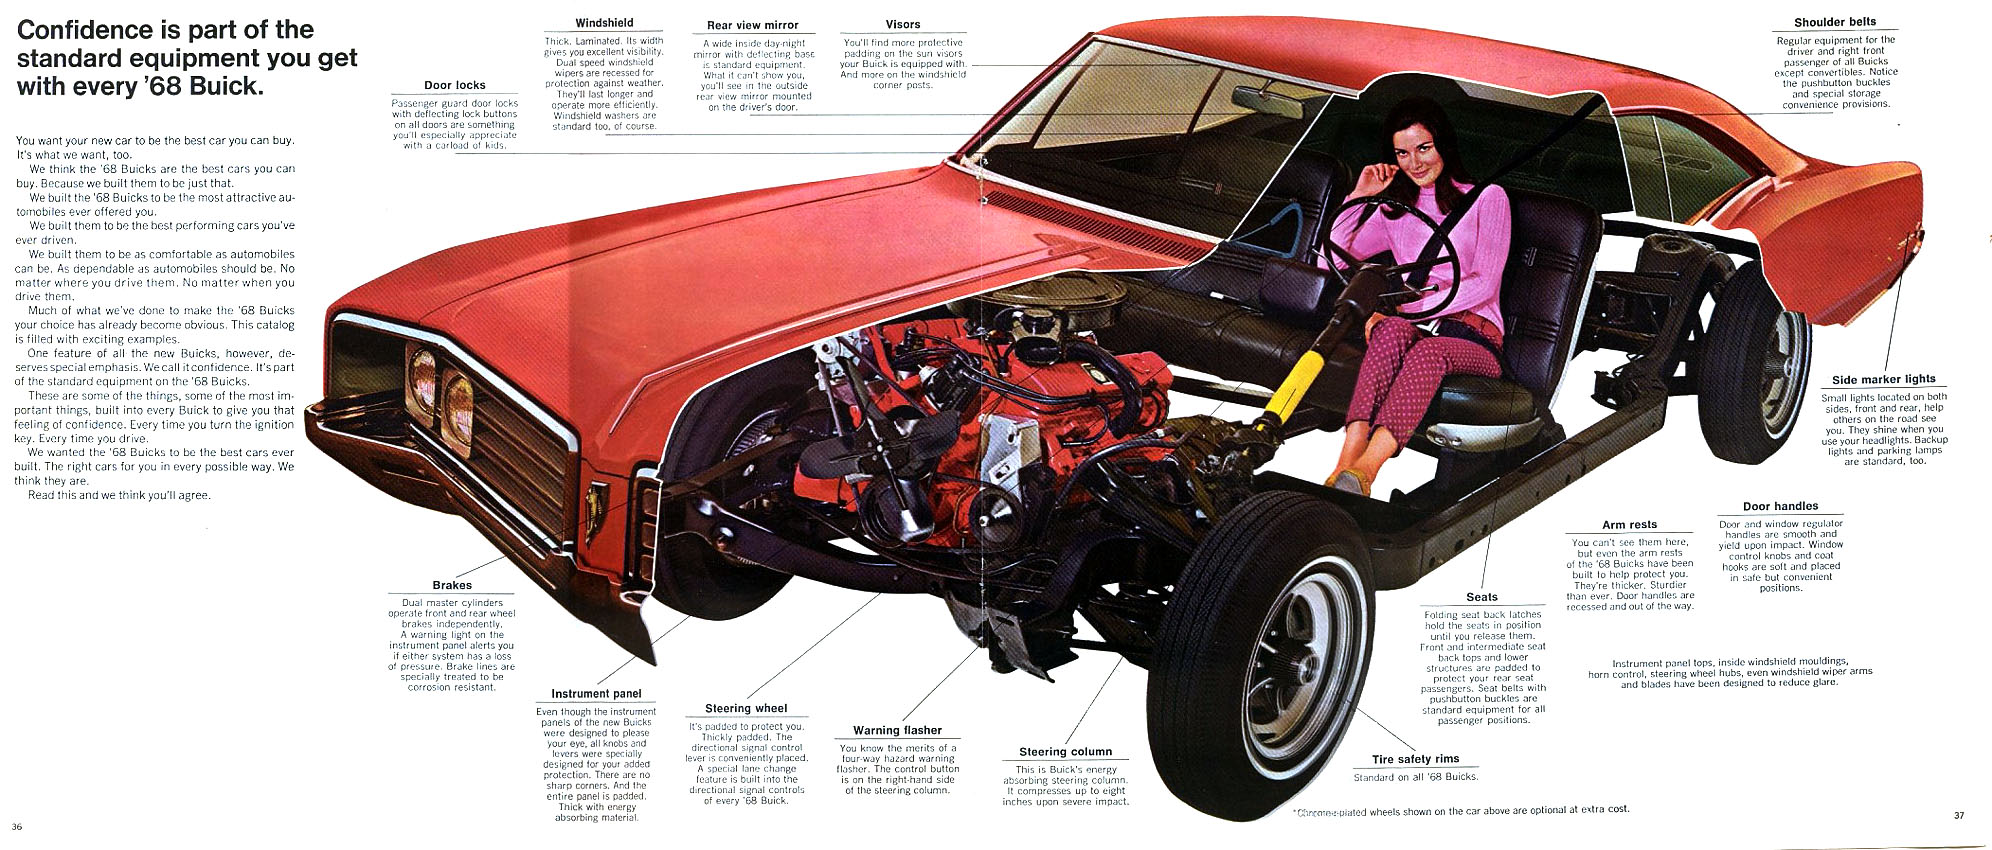 1968 Buick-22